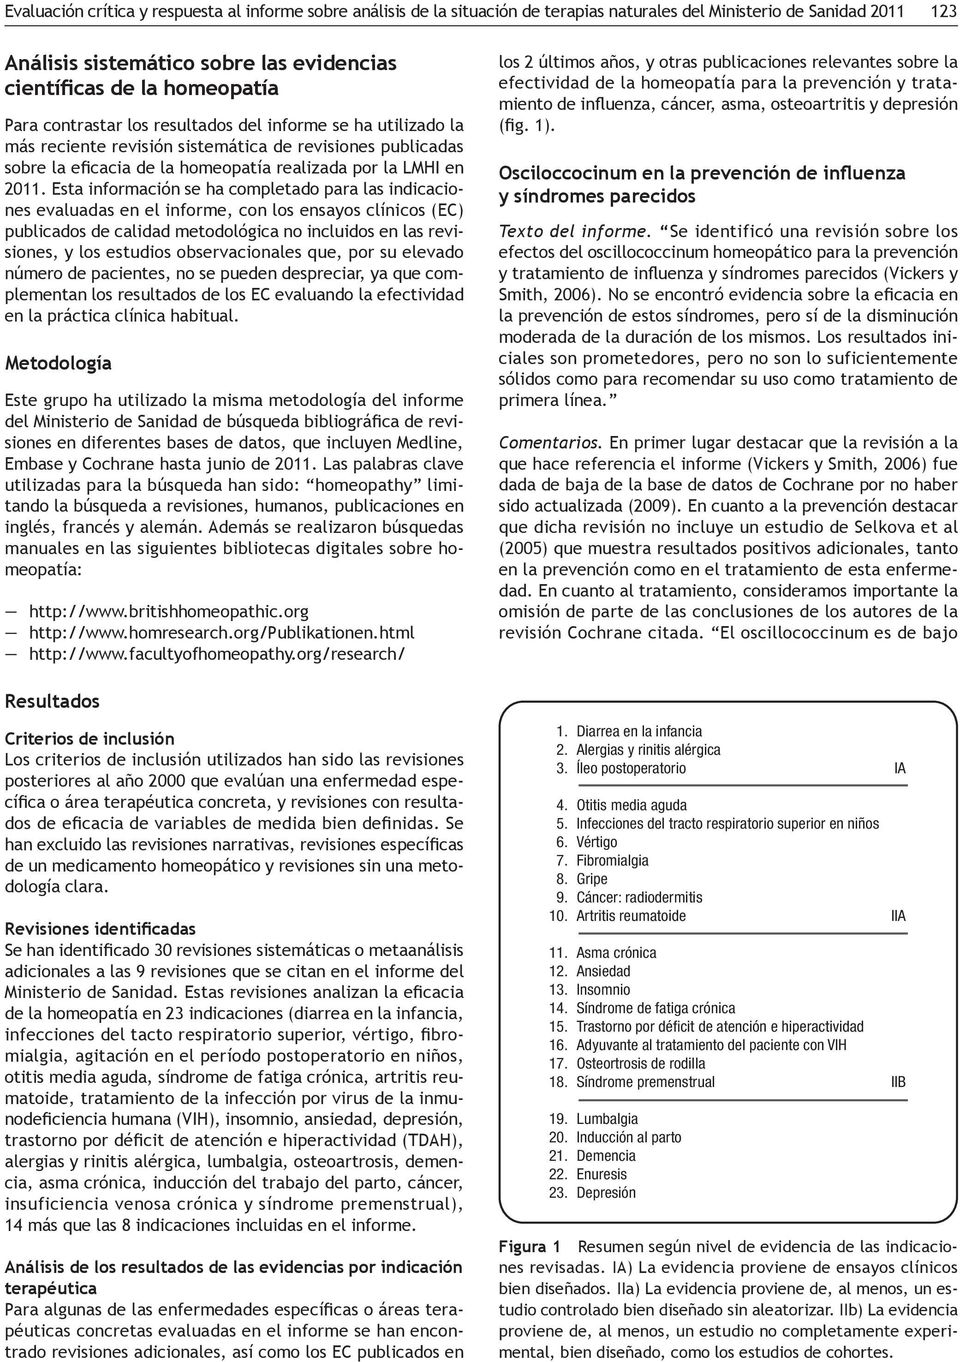 Metodología - - manuales en las siguientes bibliotecas digitales sobre ho-meopatía: Resultados Criterios de inclusión - - de un medicamento homeopático y revisiones sin una meto-dología clara.